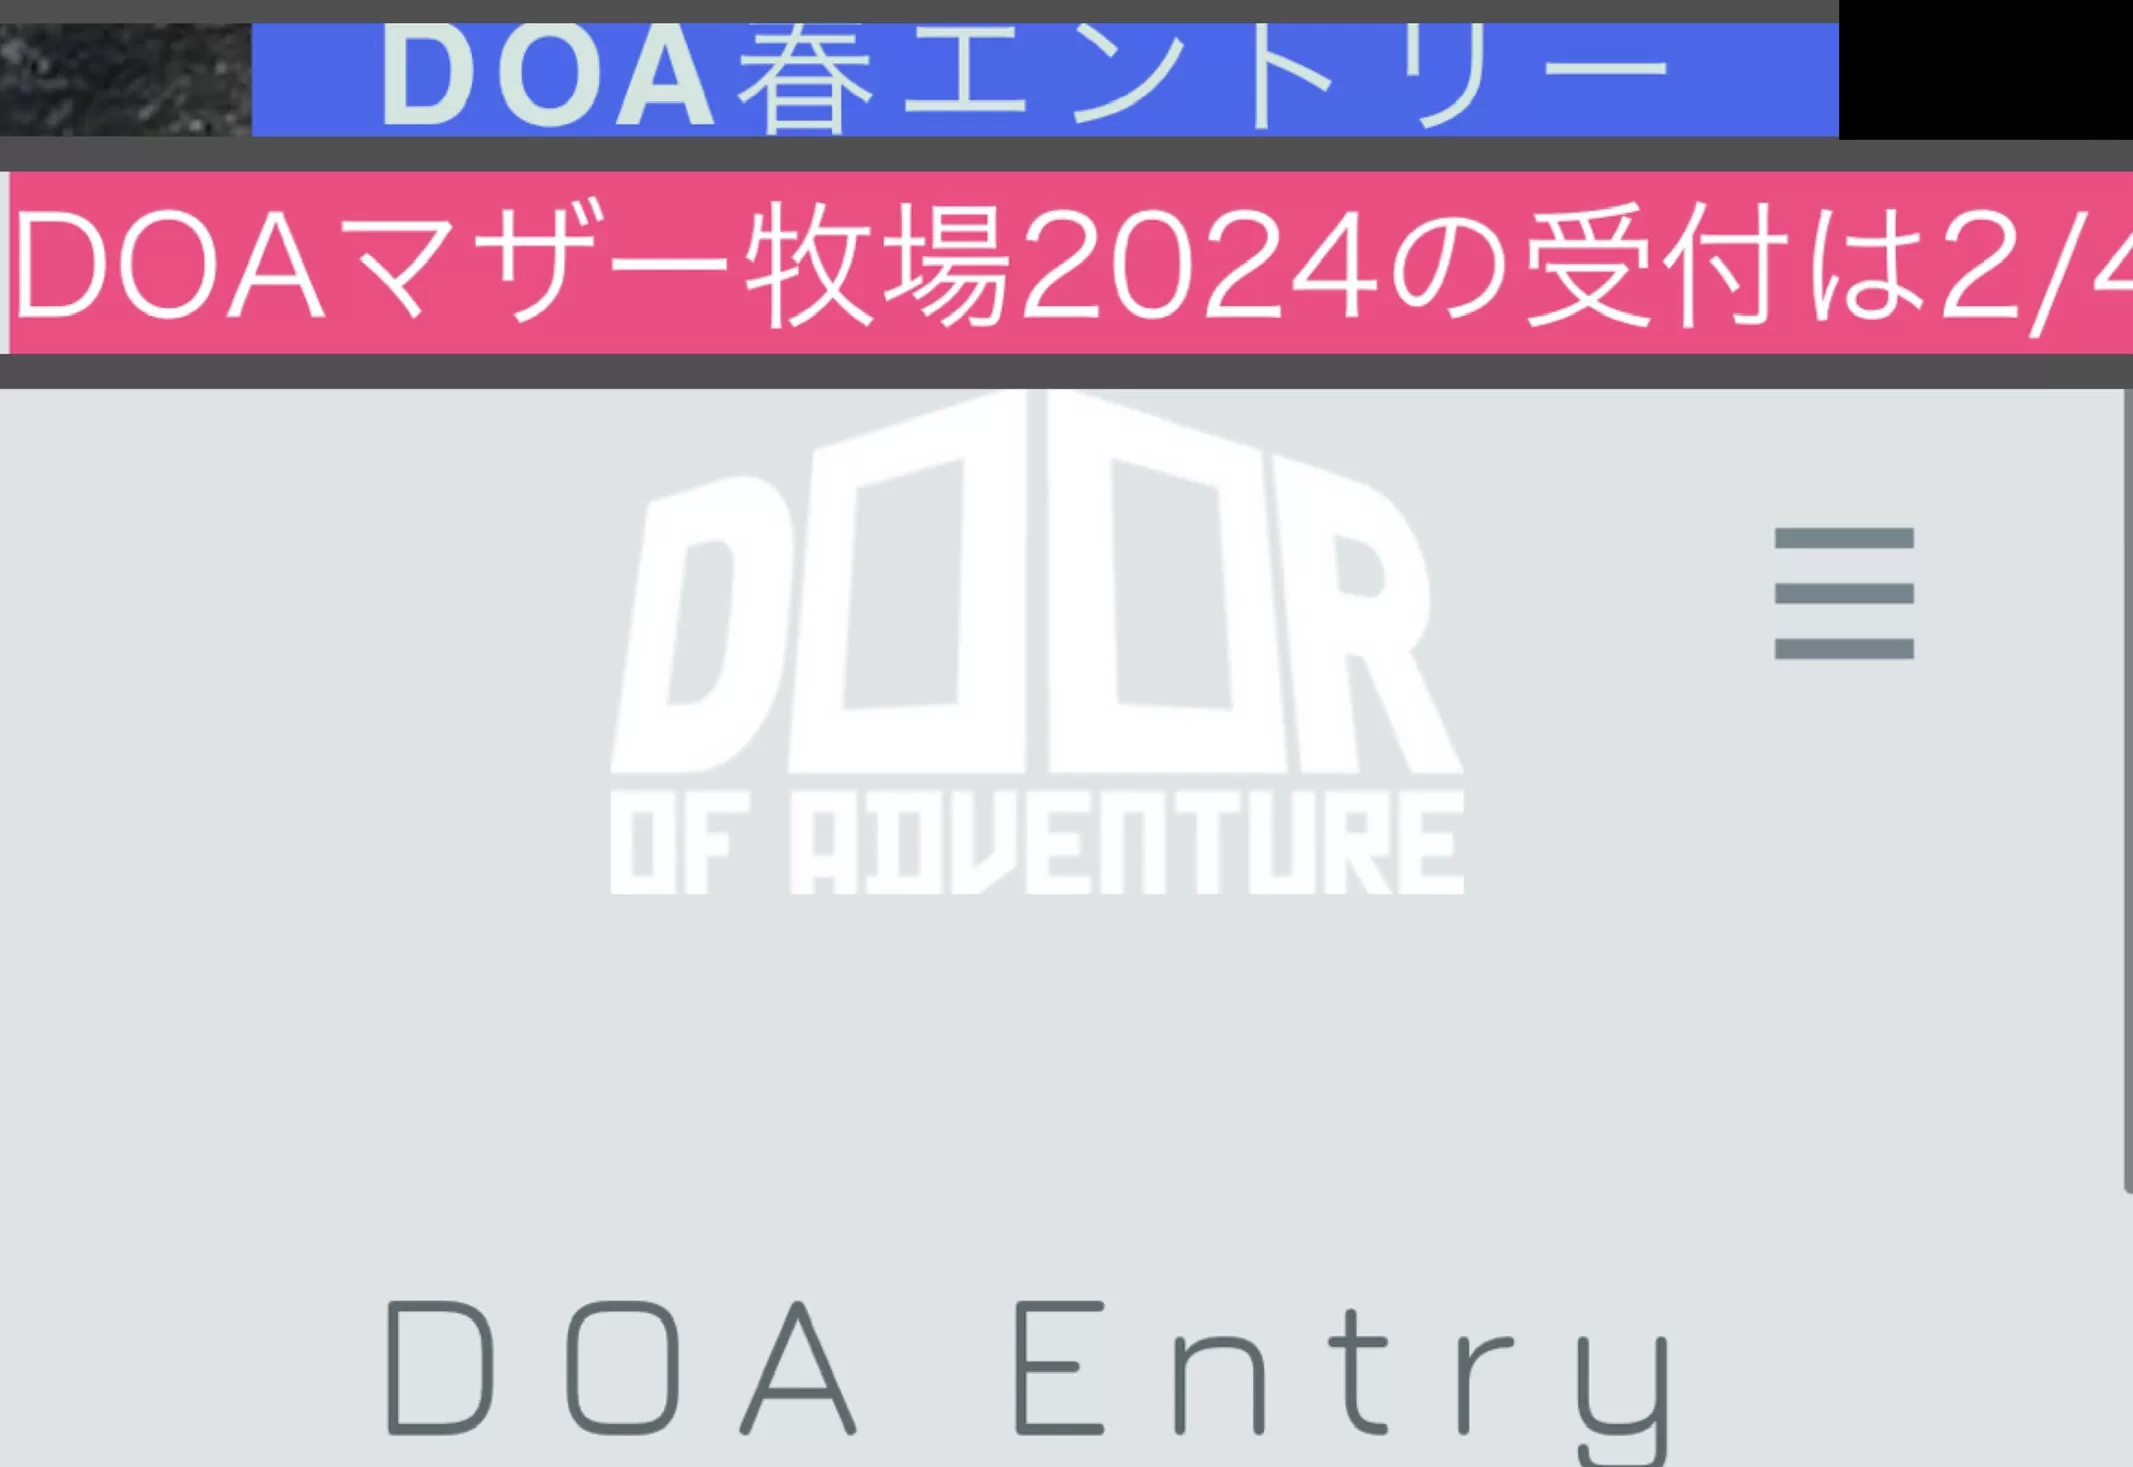 DoorofAdventure 2024 春 エントリー2月4日